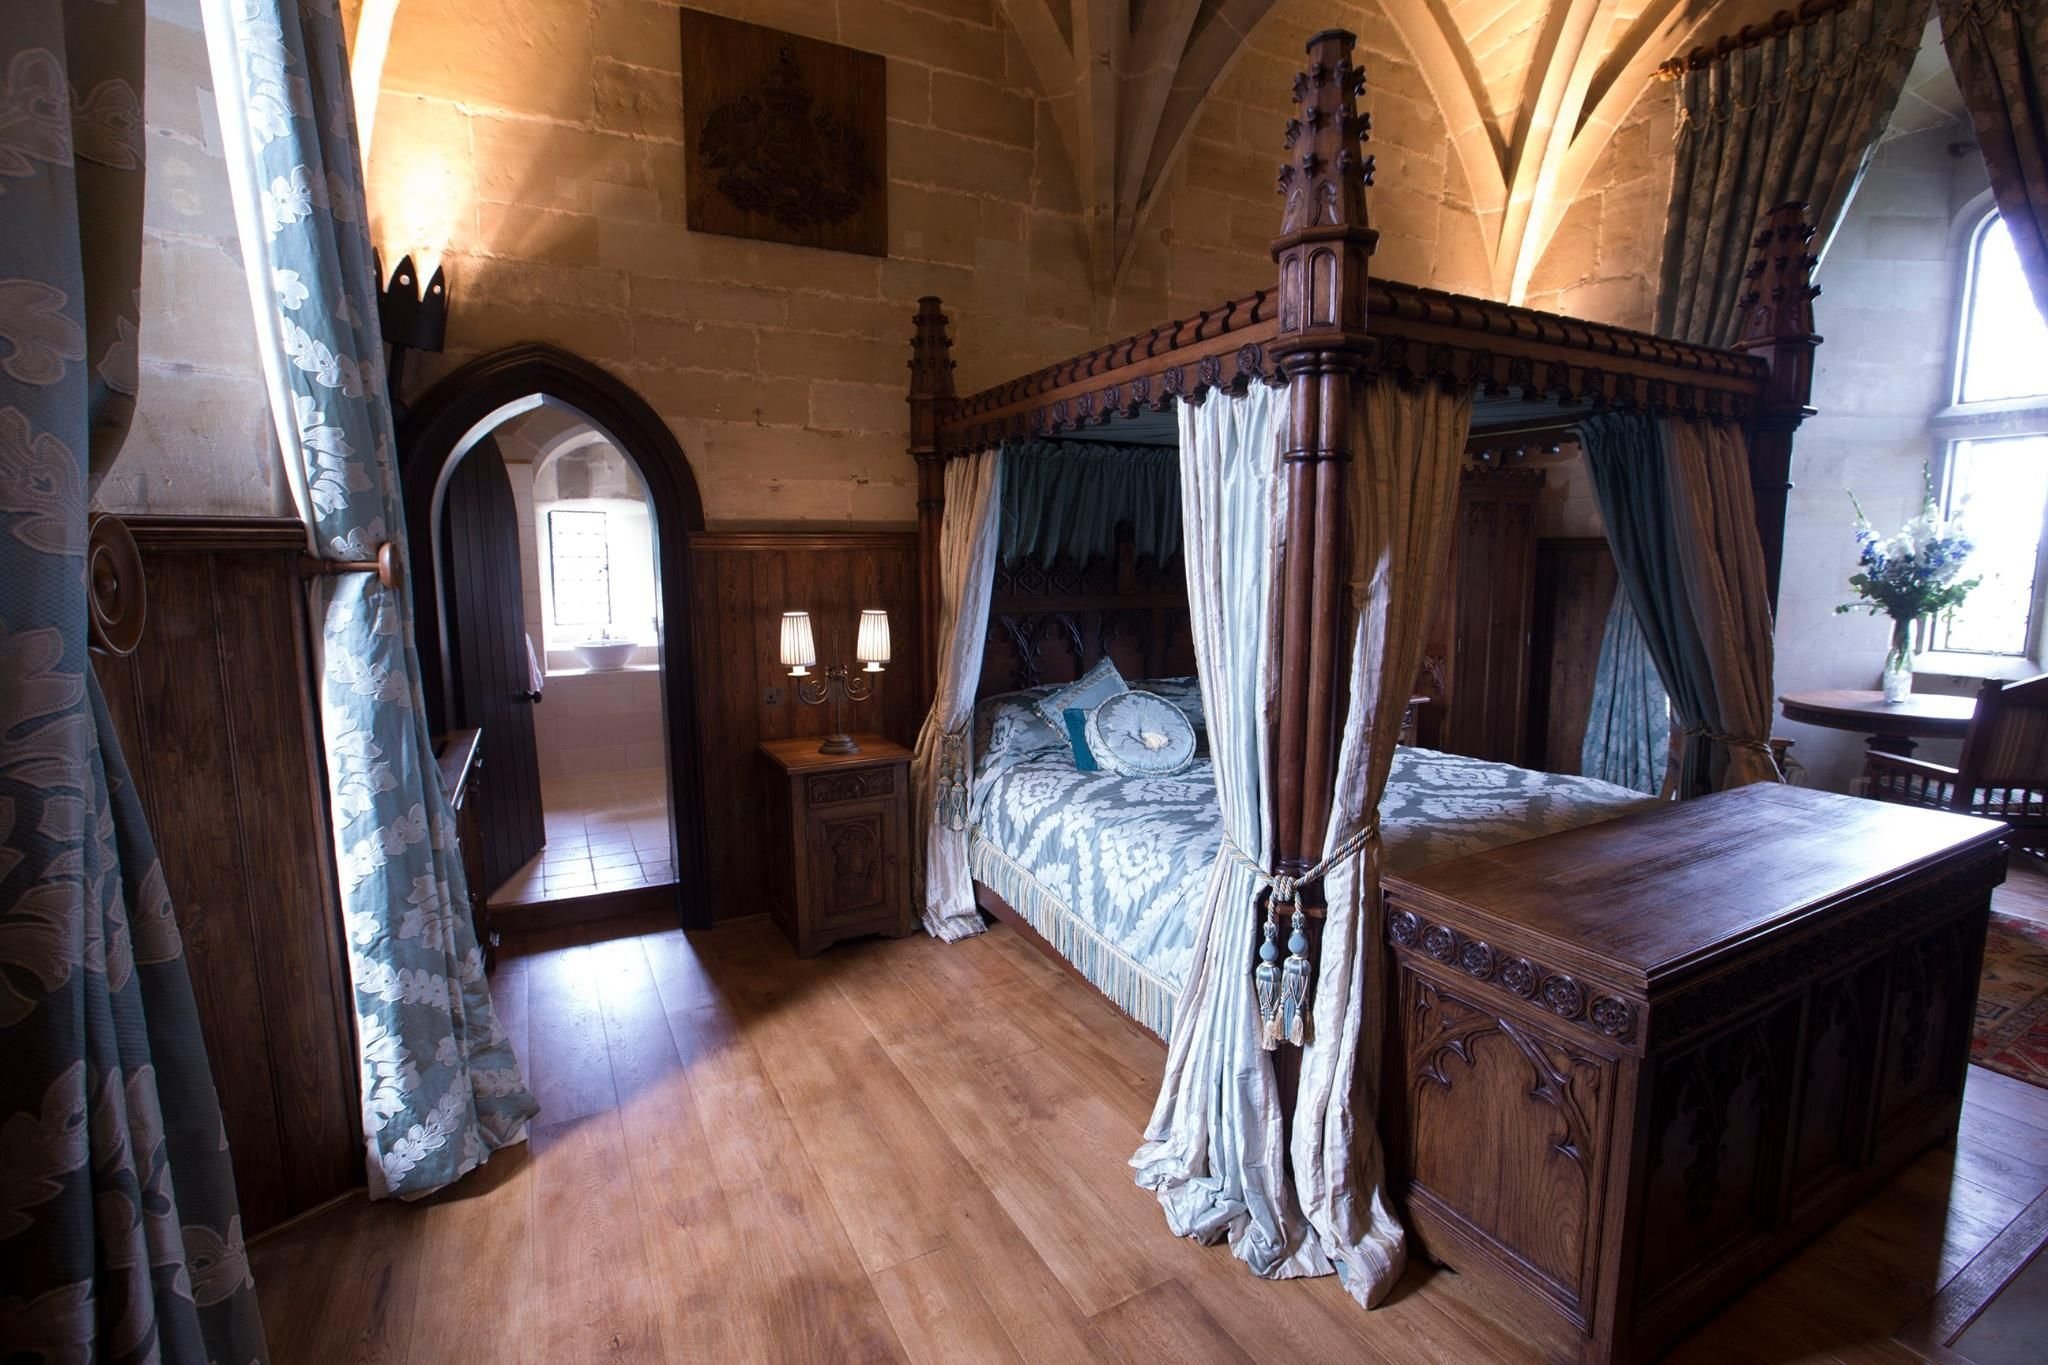 В большом старинном замке. Спальня в замке Уорик в Англии. Романский стиль в интерьере средневековья. Замок Уорик интерьеры. Кройценштайн замок интерьер.